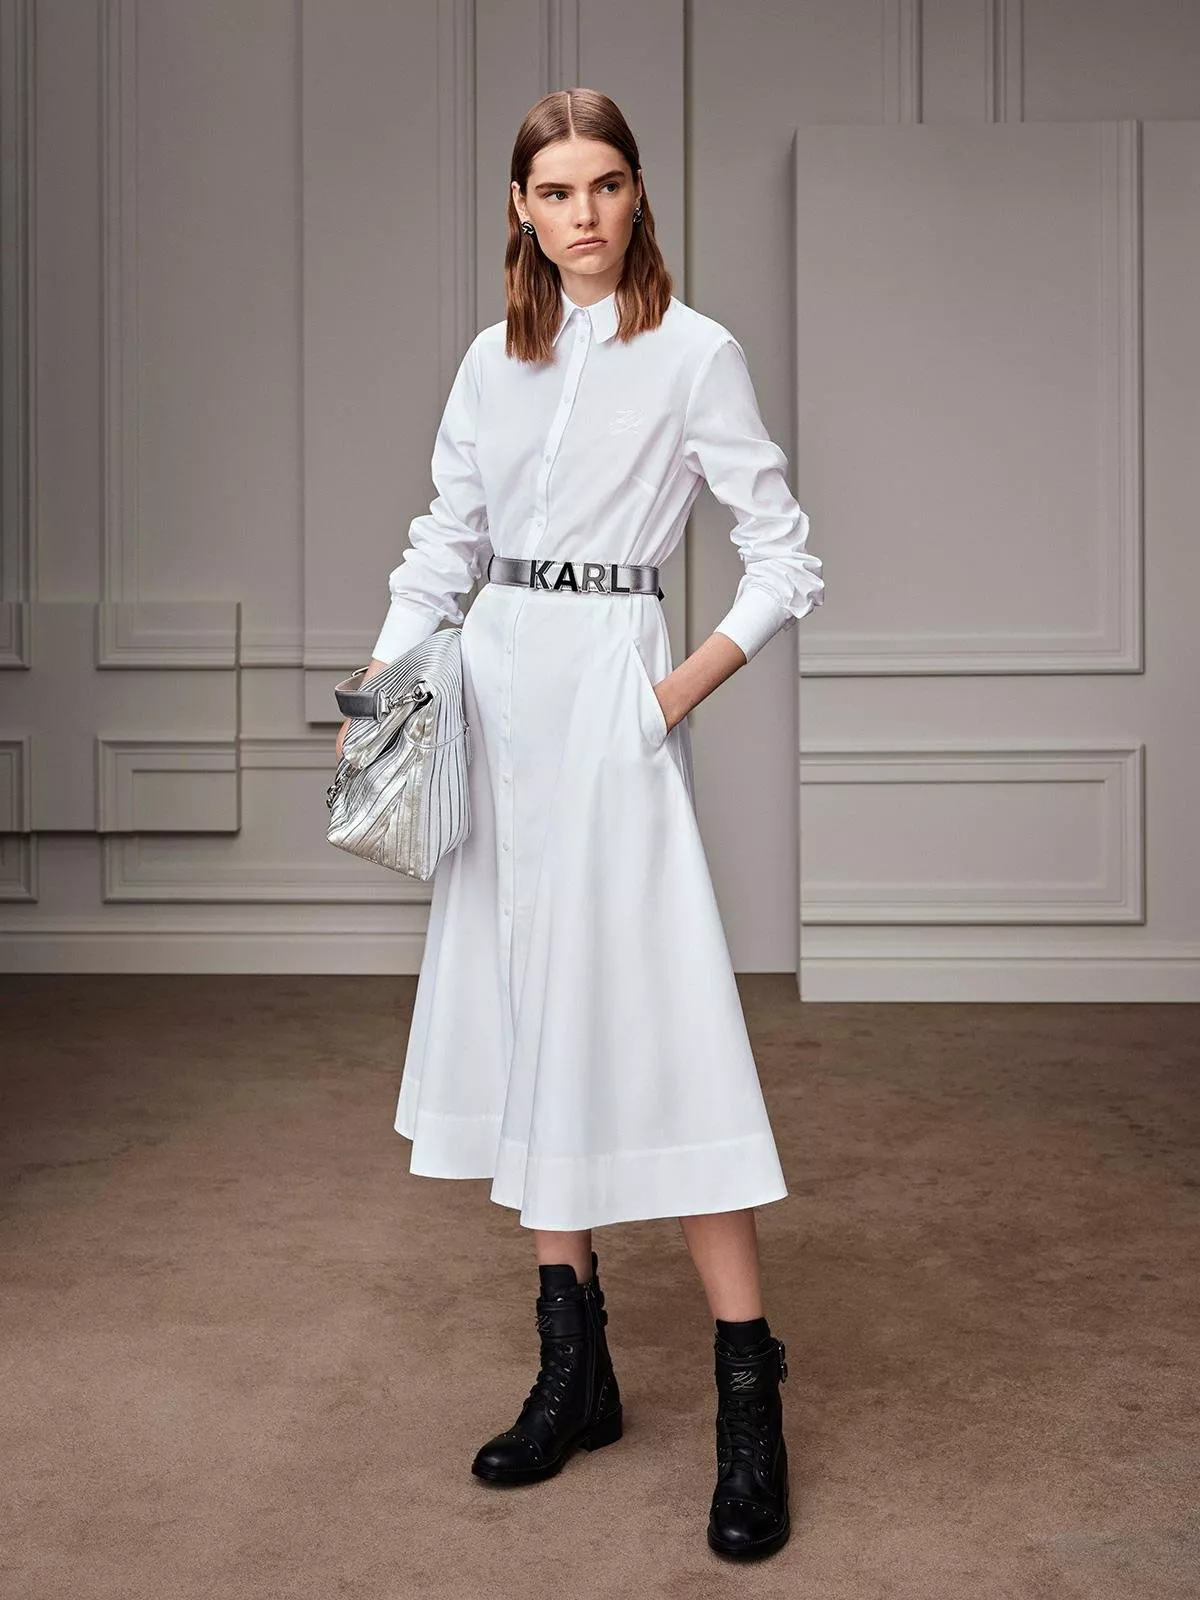 مجموعة Karl Lagerfeld لخريف 2020: لينا الغوطي تأخذنا إلى القرن الثامن عشر